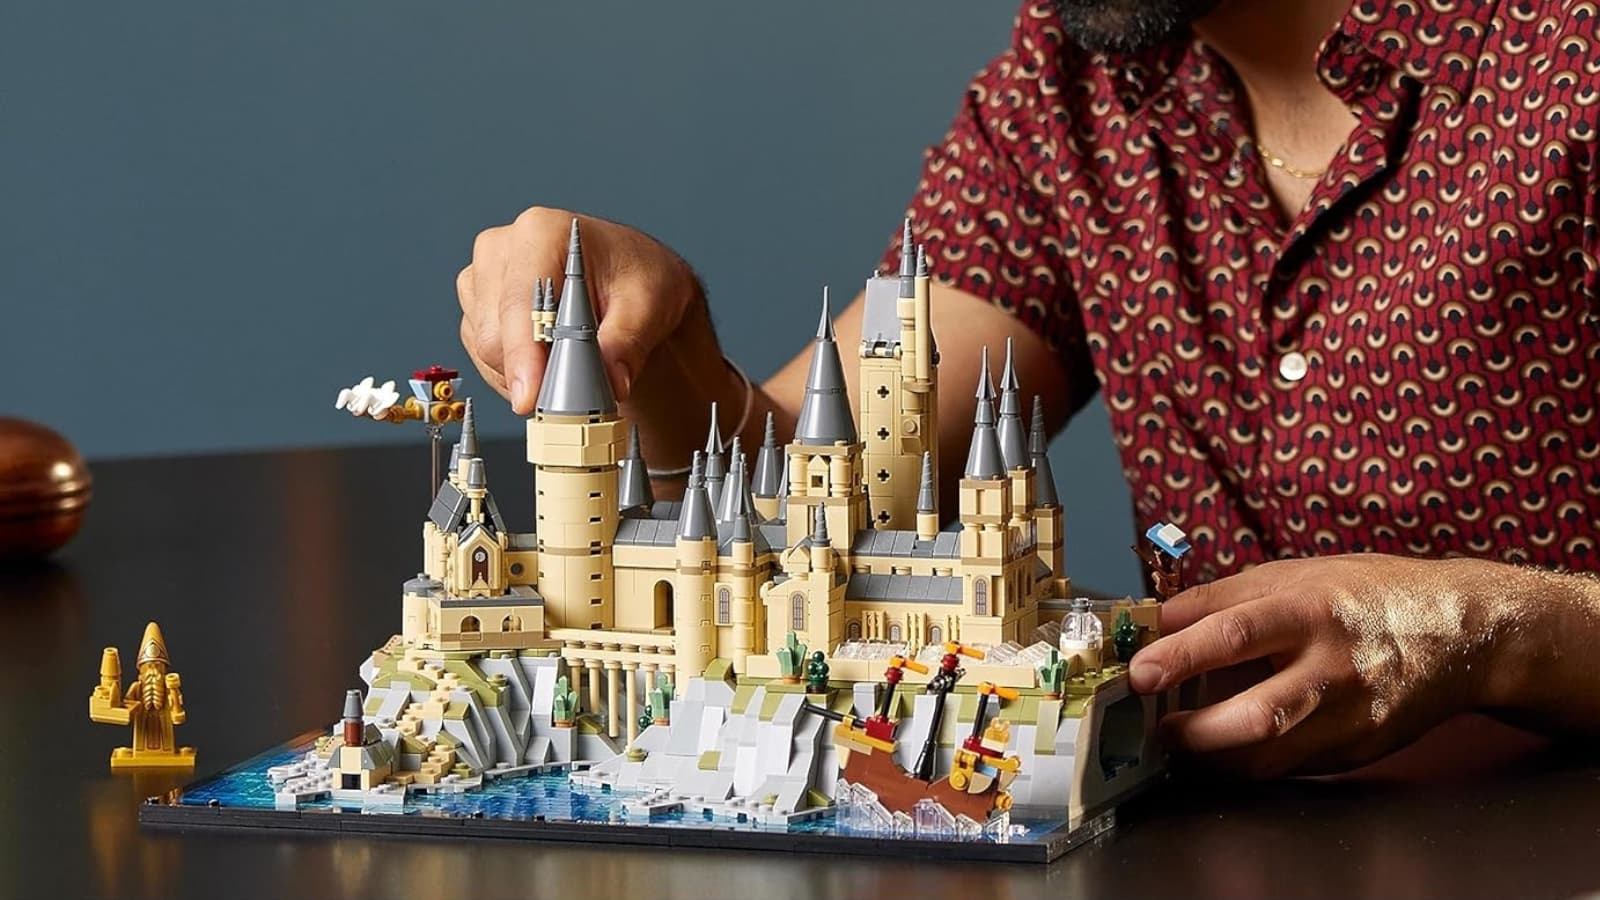 Ce set Lego Harry Potter Château de Poudlard est parfait à offrir